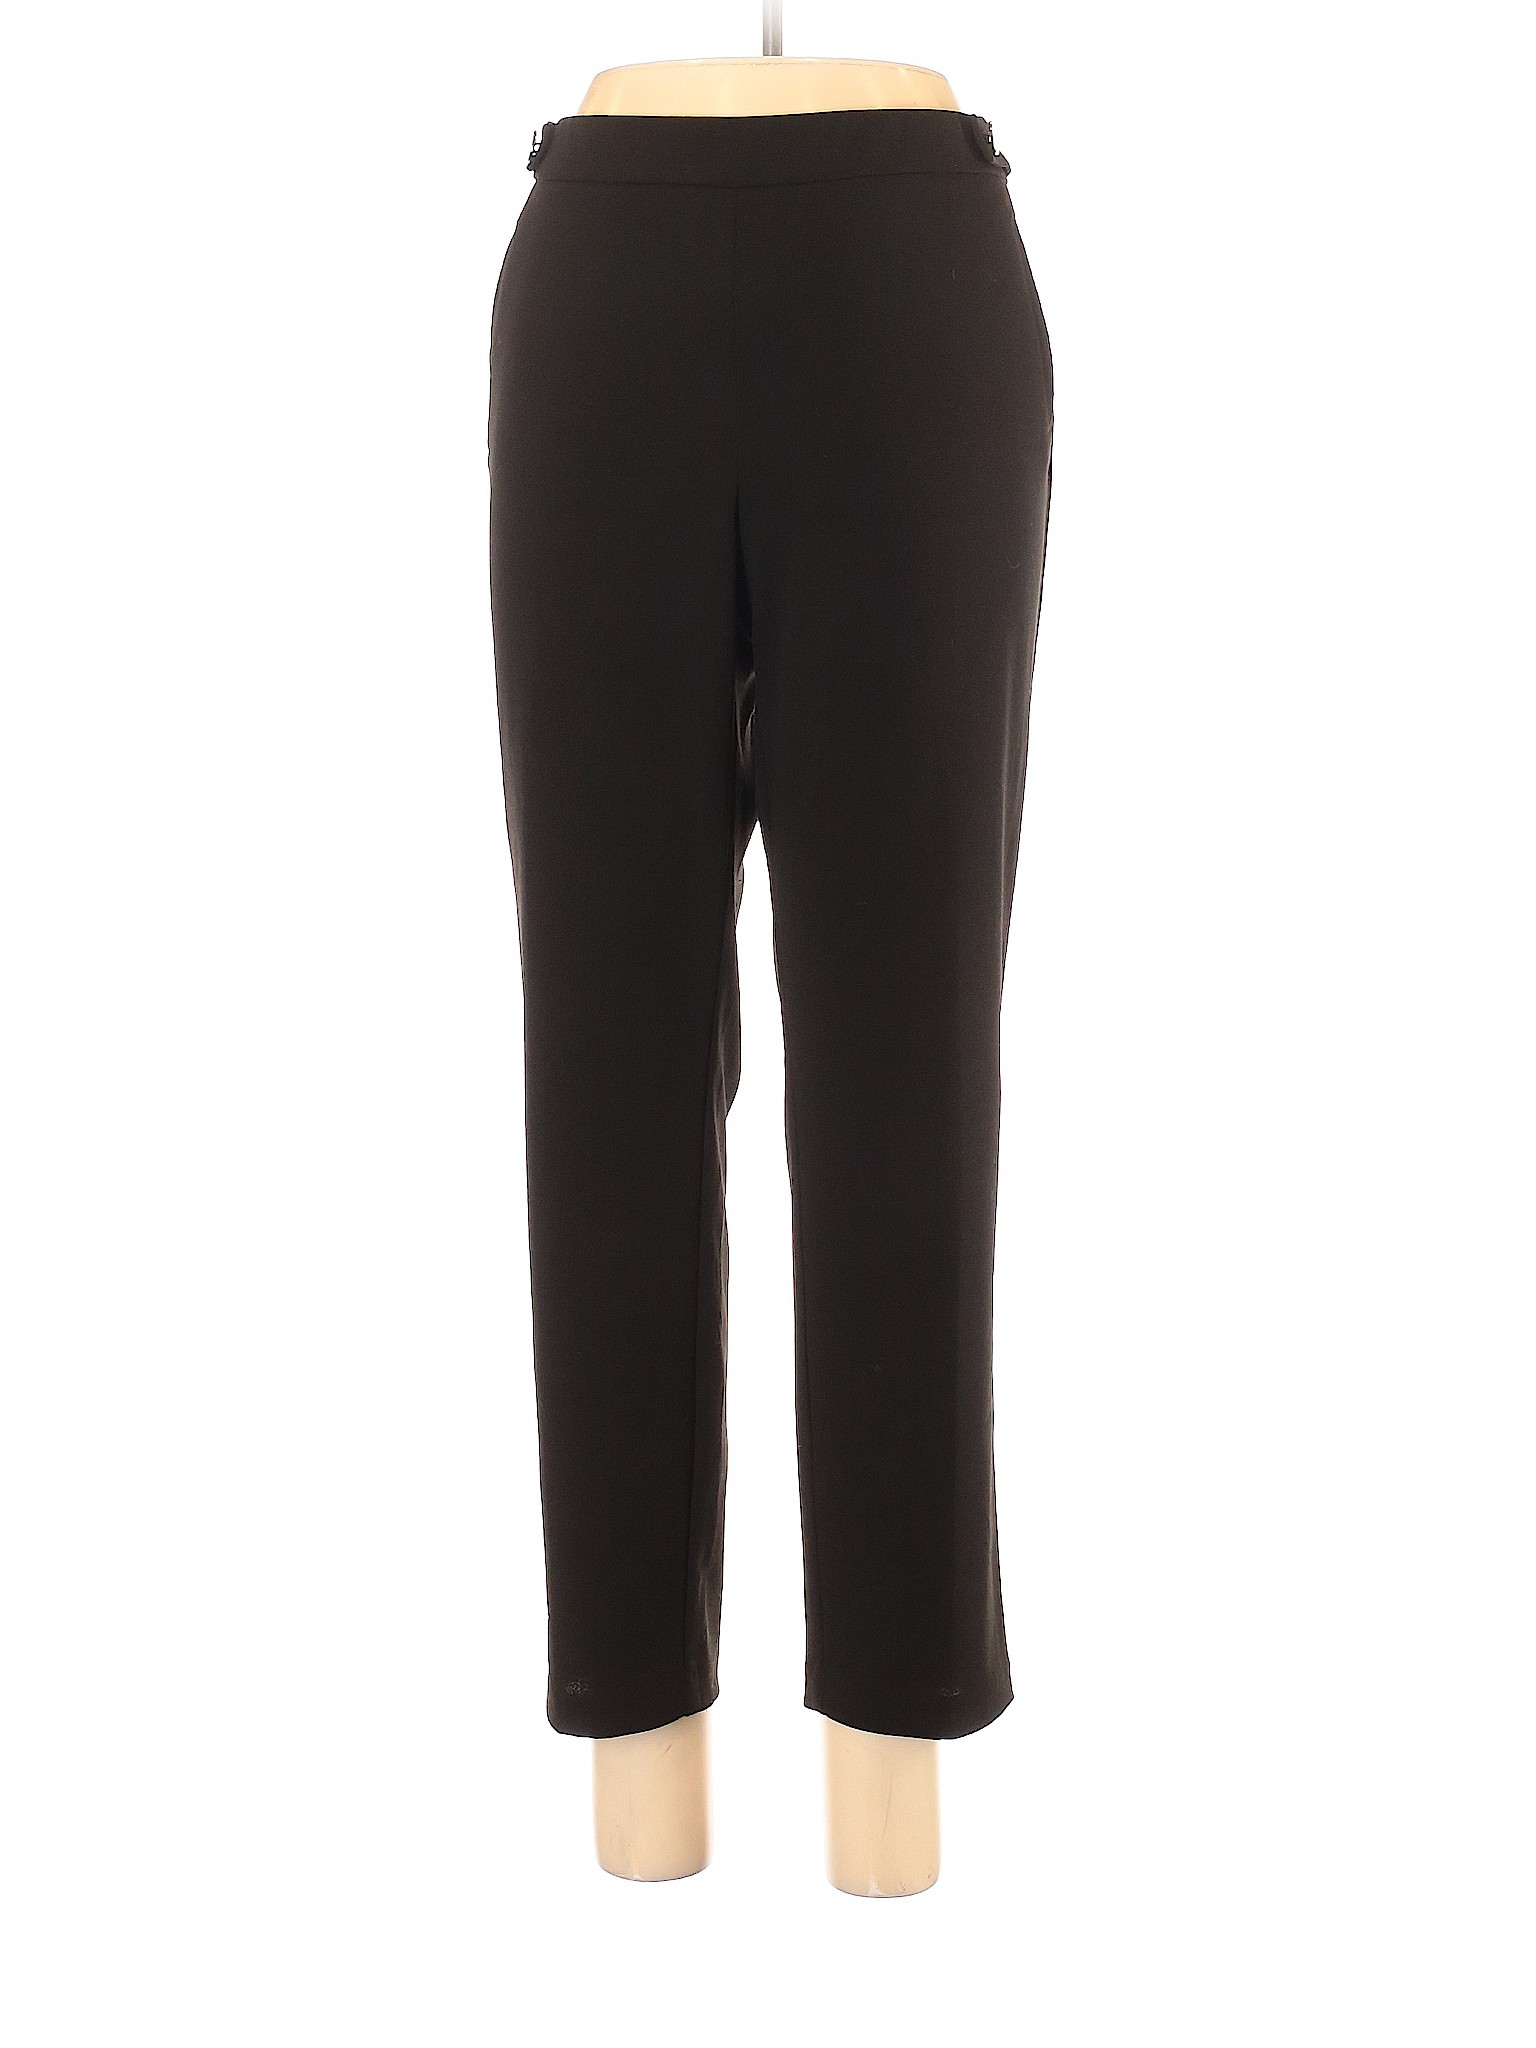 SOHO Apparel Ltd Solid Black Casual Pants Size L - 77% off | thredUP